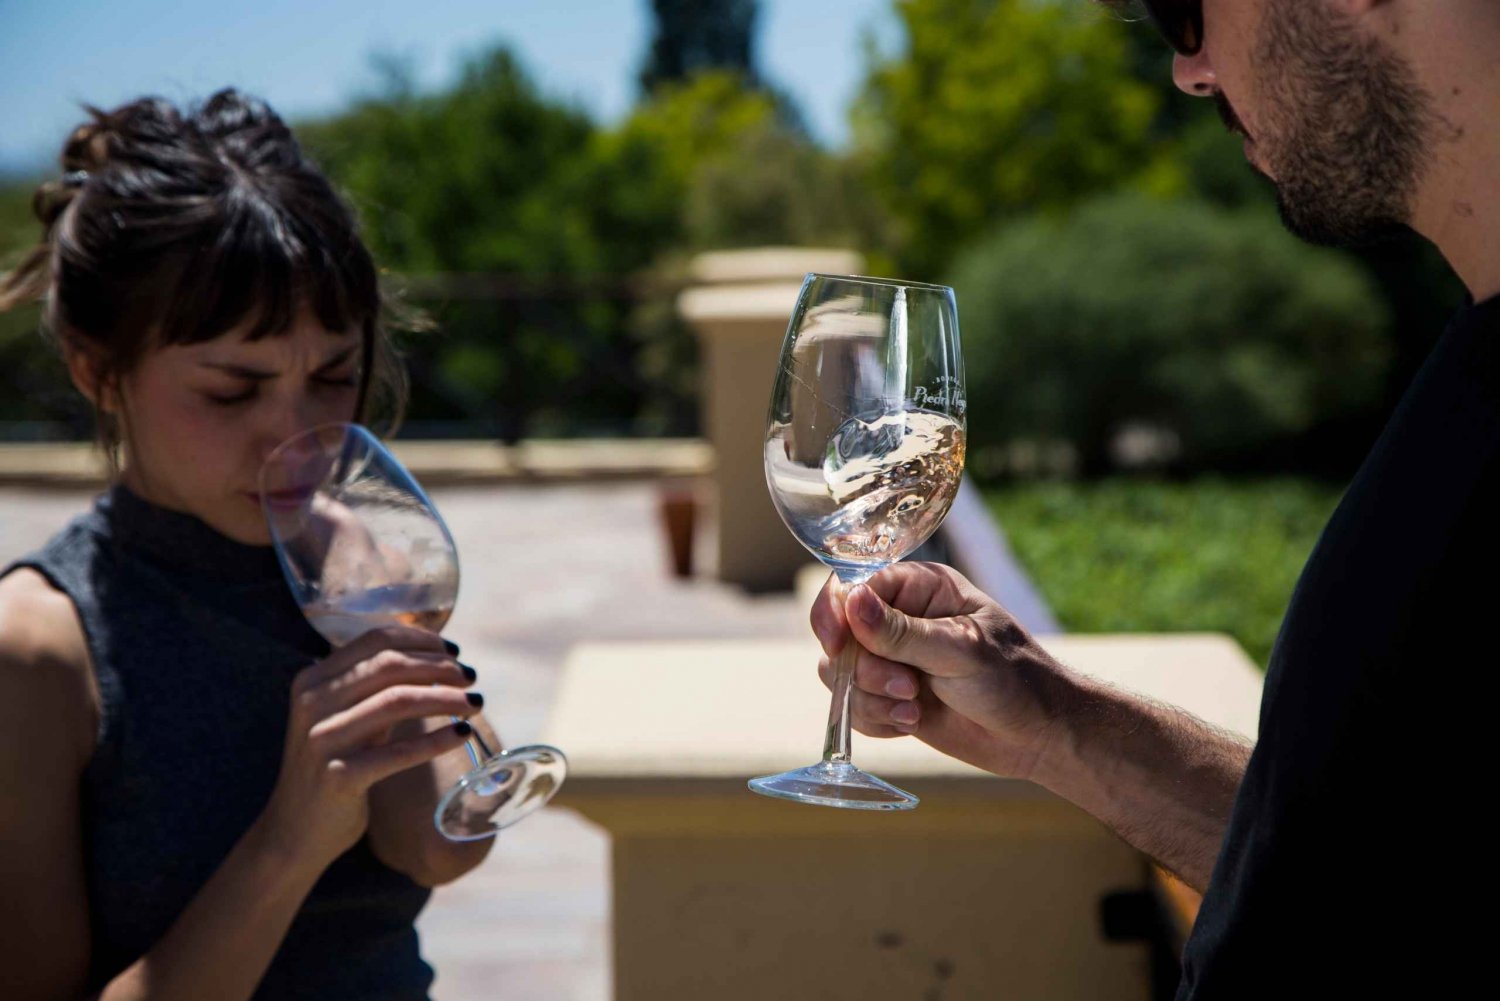 Välj ditt vinäventyr i Uco Valley